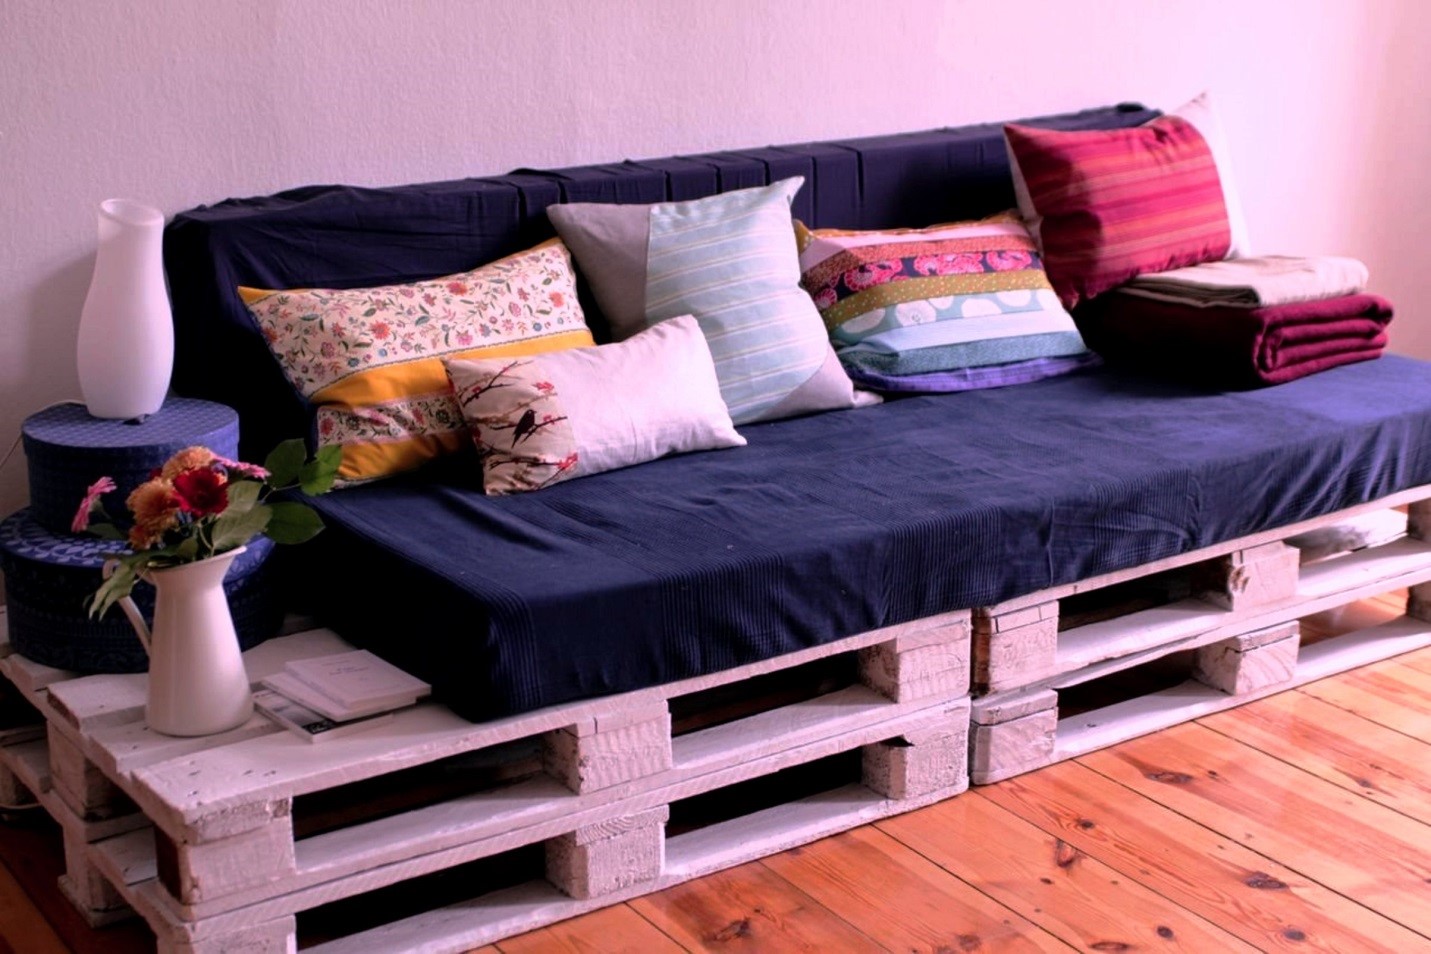 Мебель из поддонов - необычно, недорого и весьма практично, делаем кровать своими руками